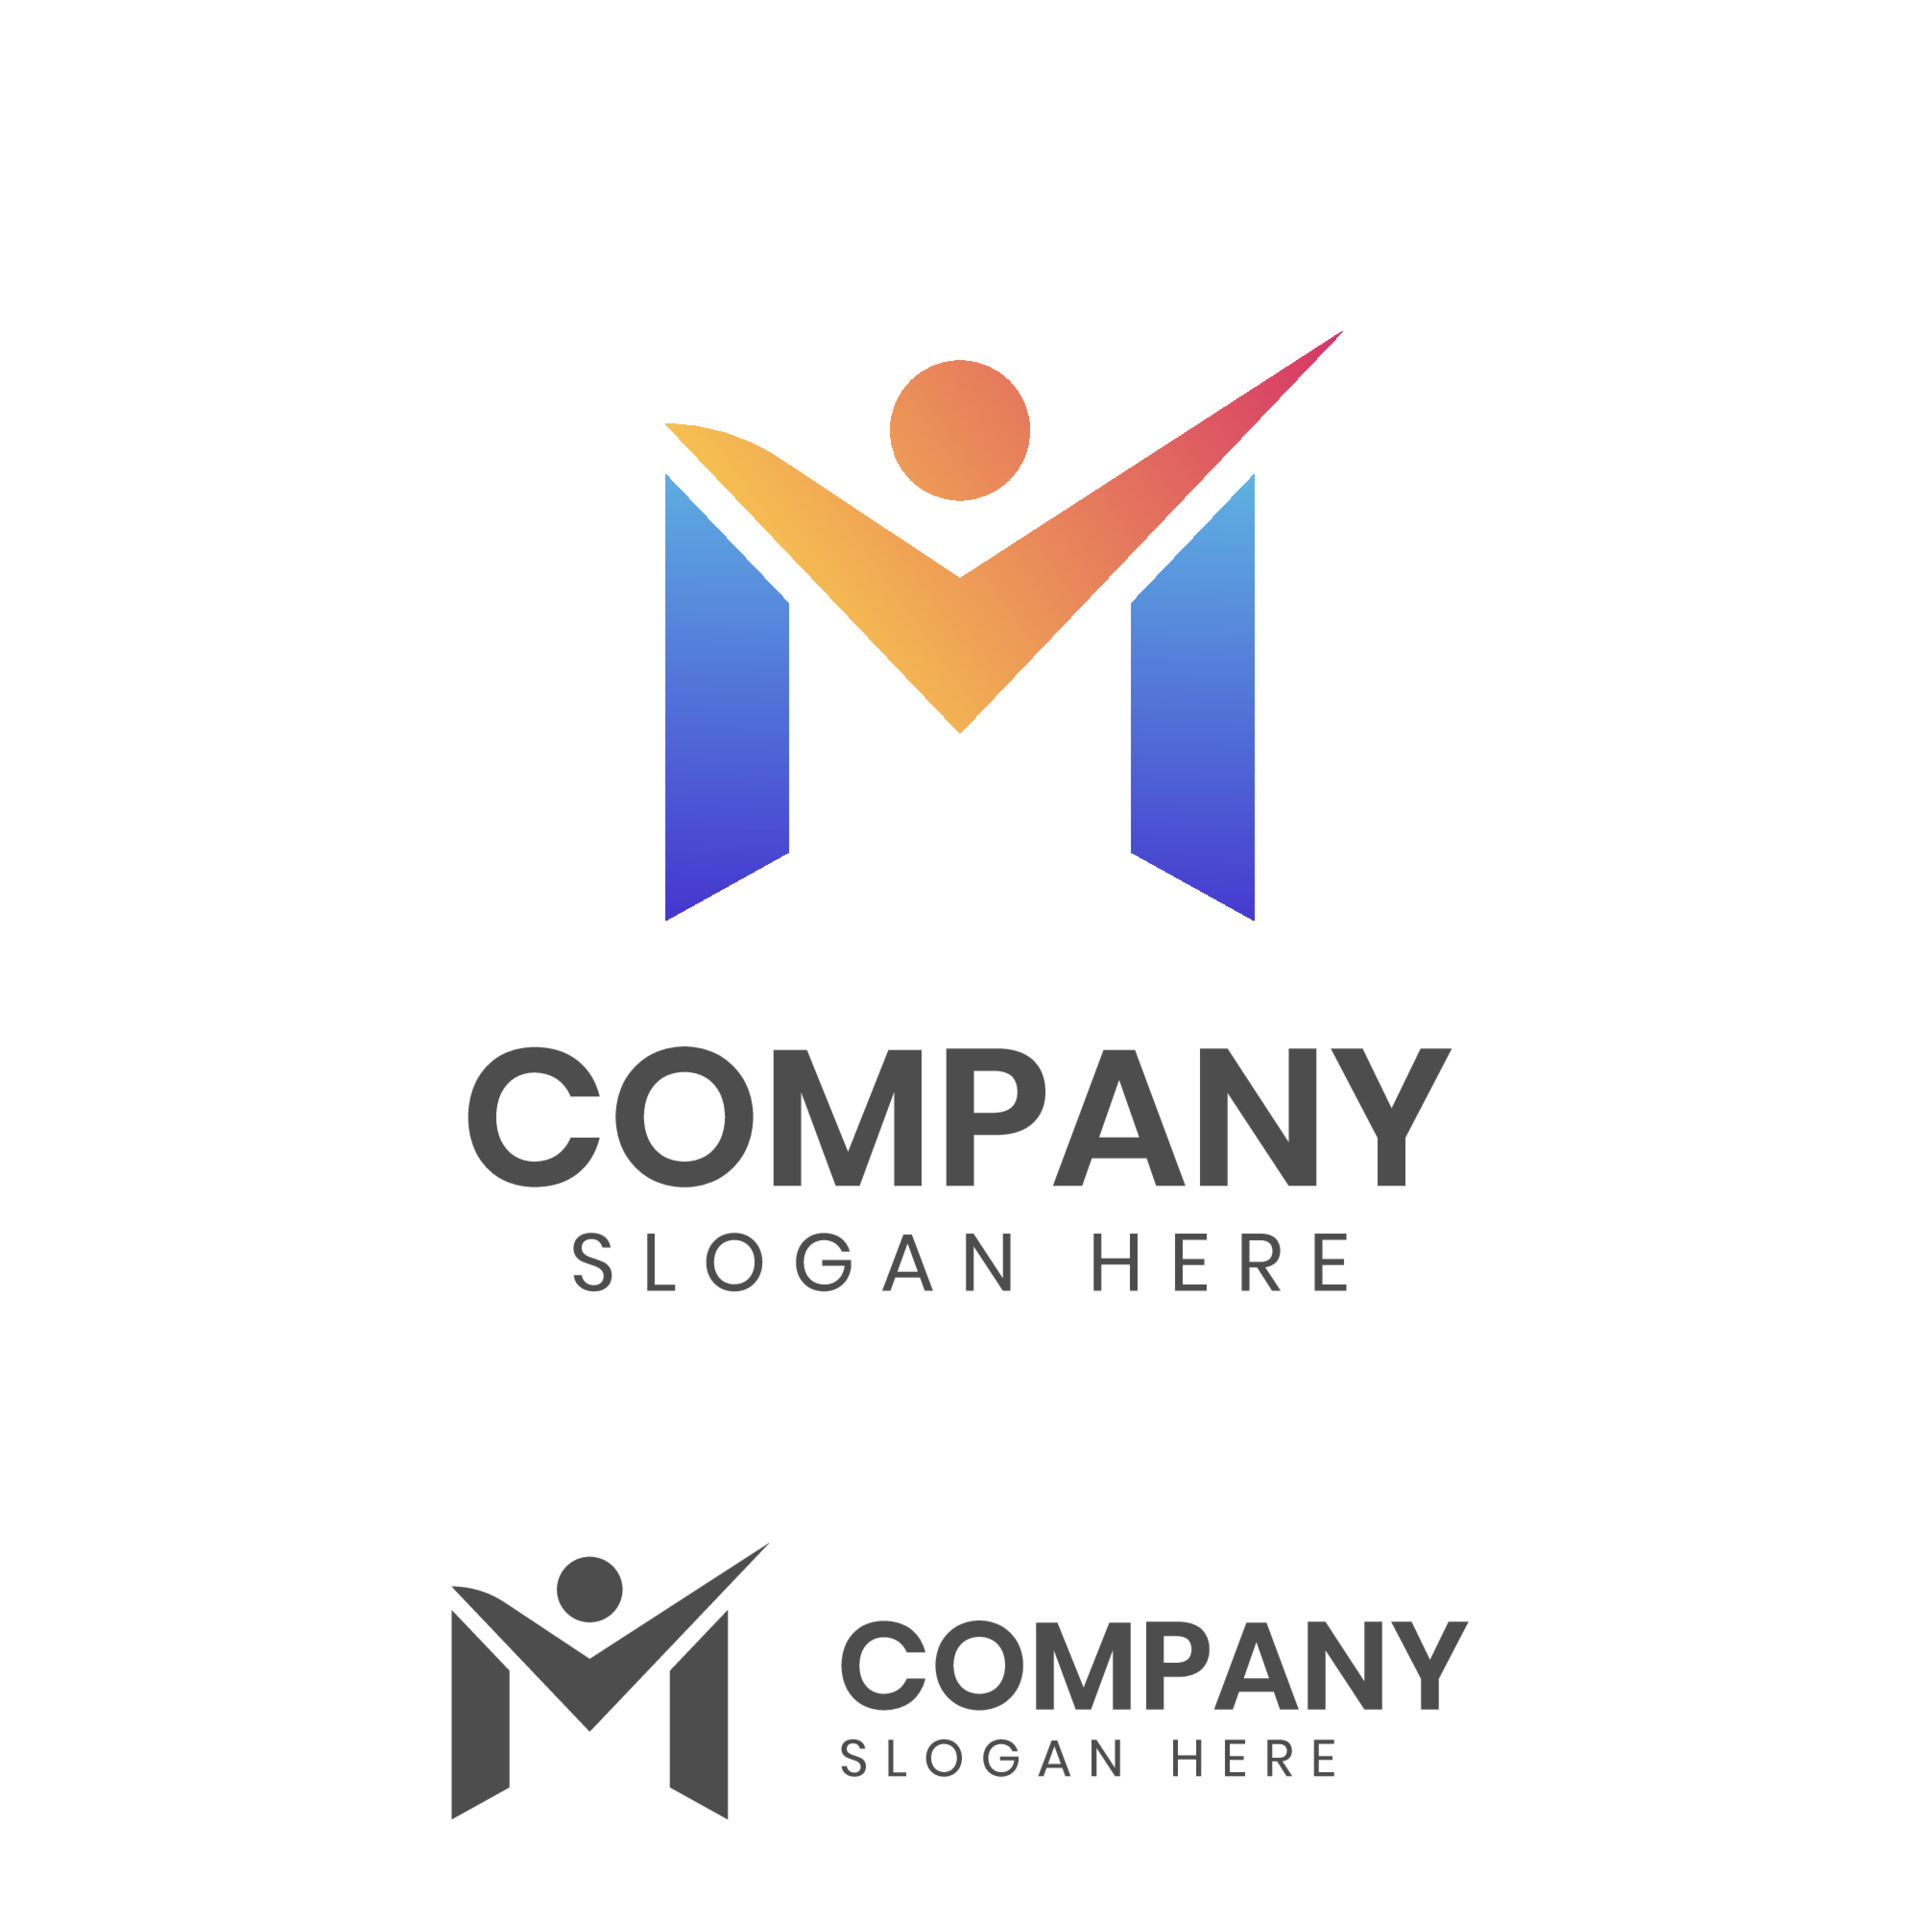 company sales logo